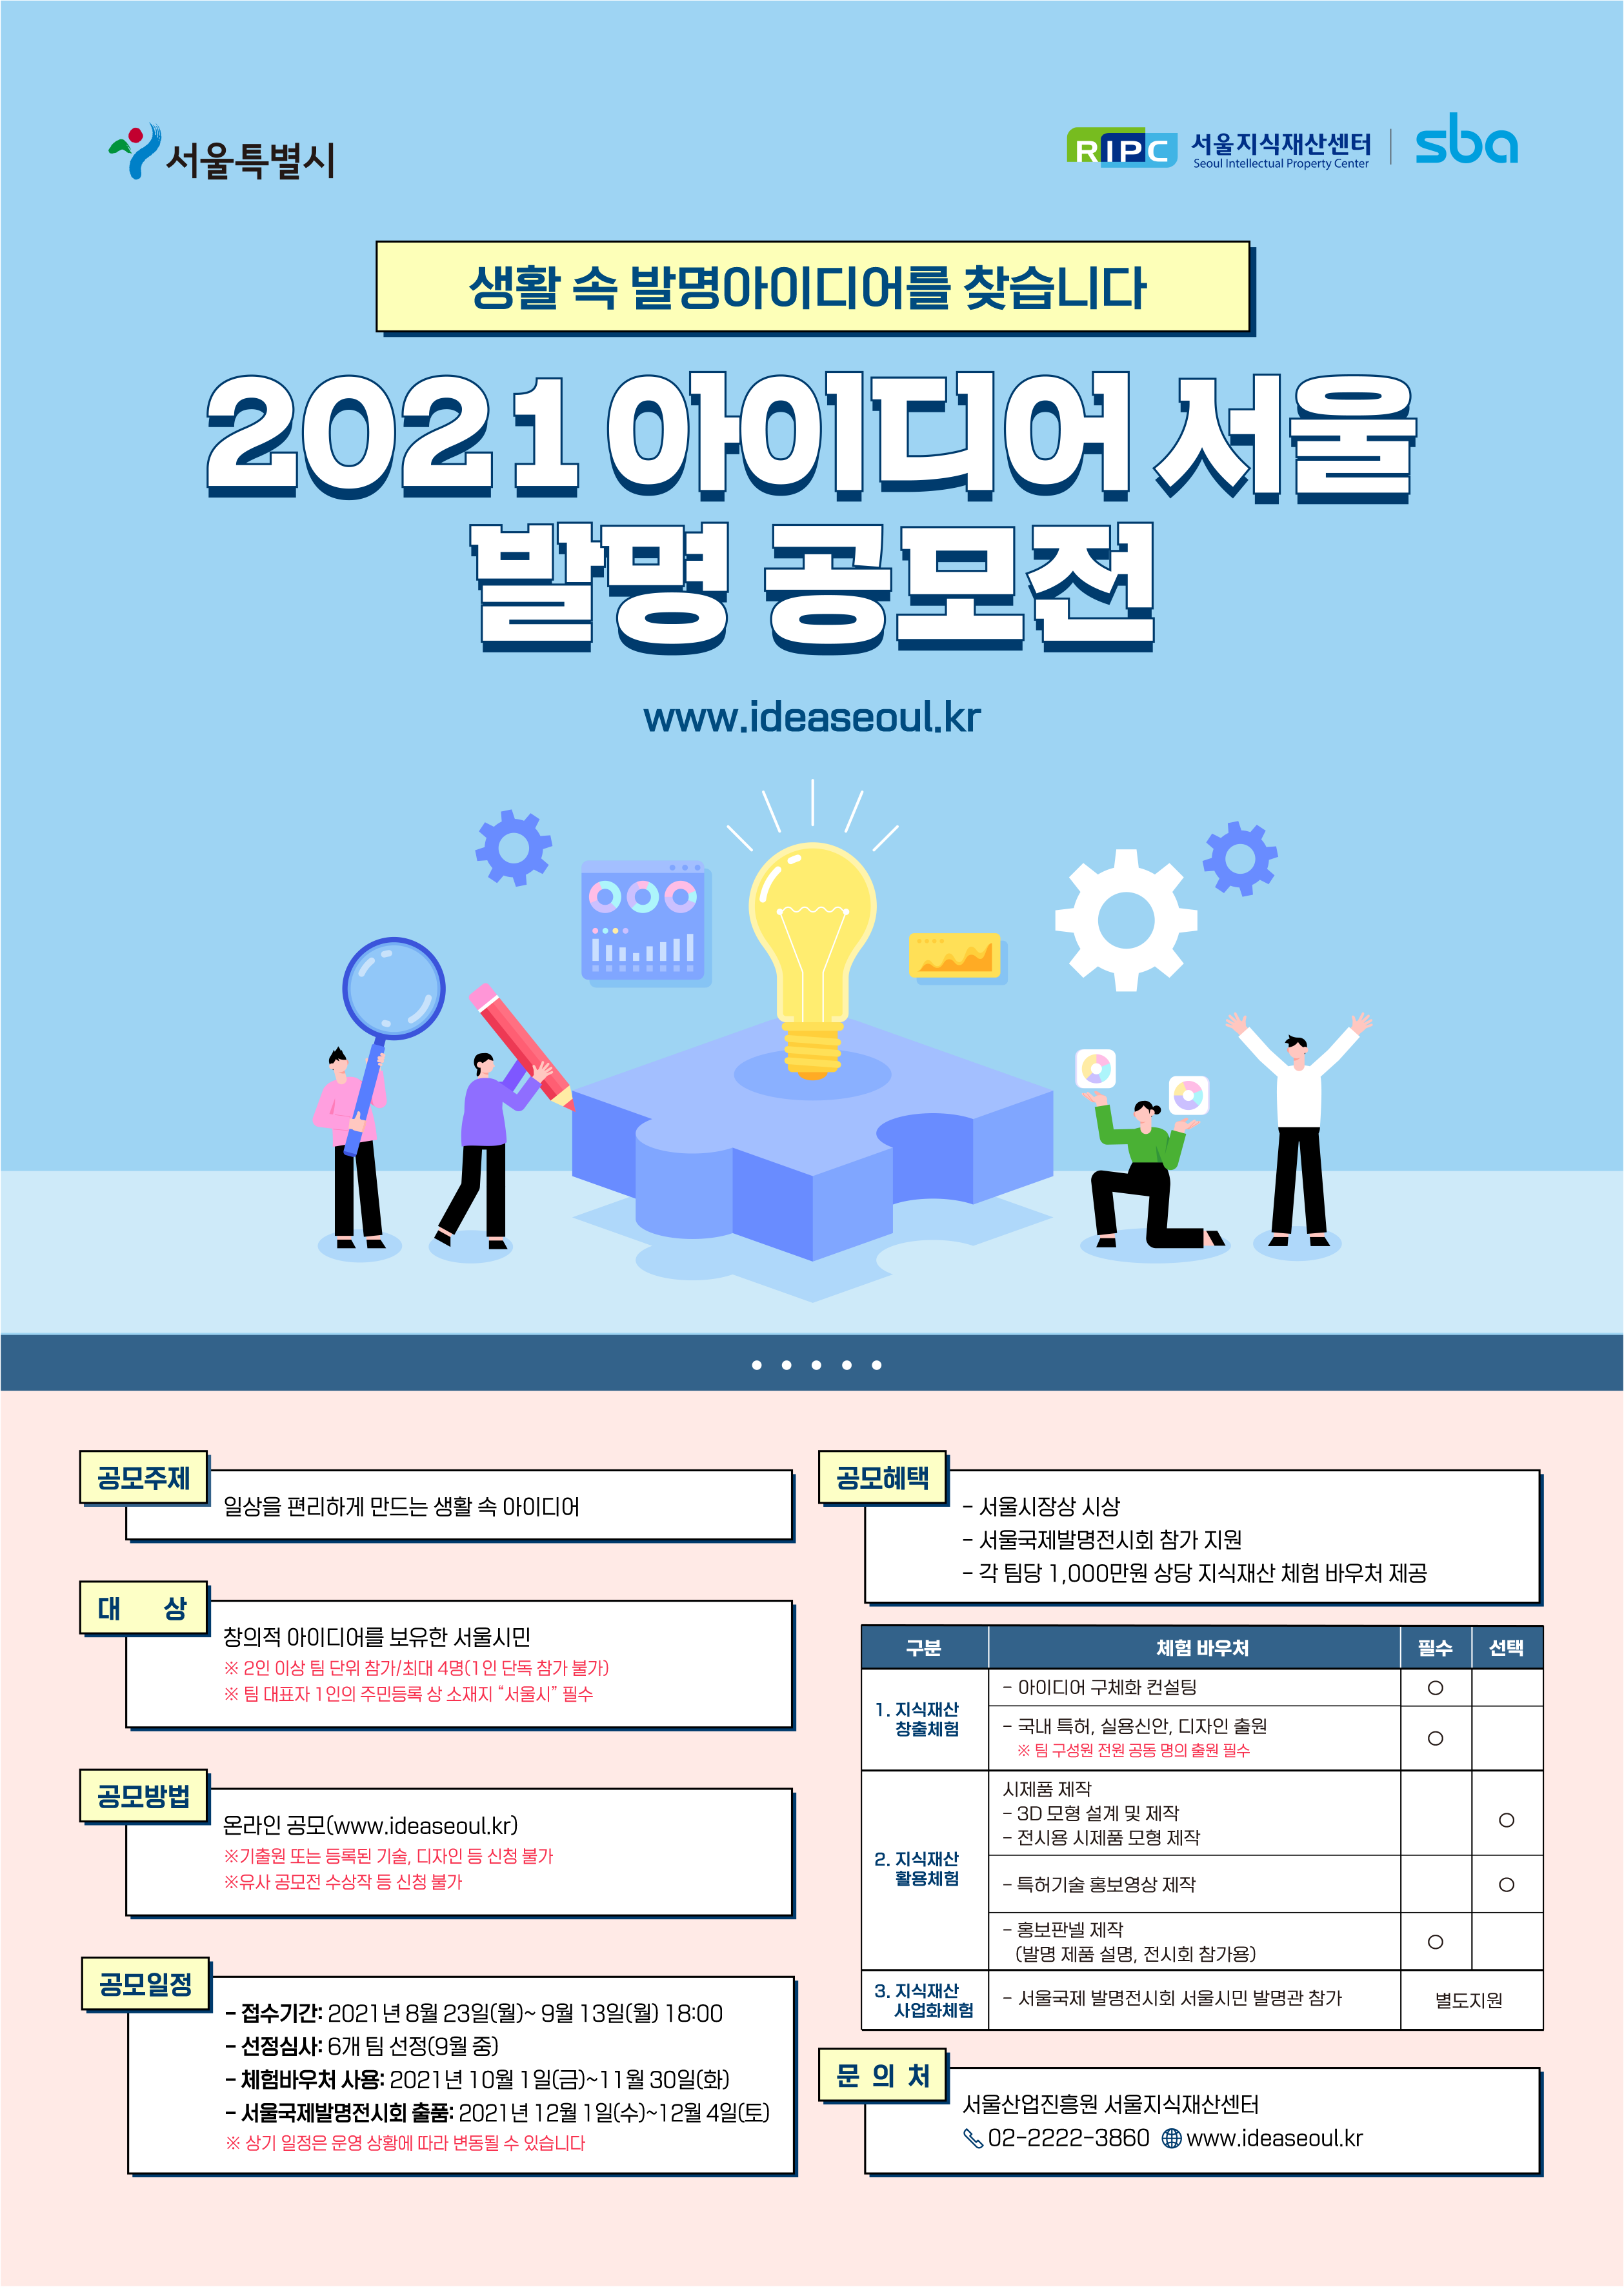 붙임 2. 2021 아이디어 서울 발명공모전_출력용.png